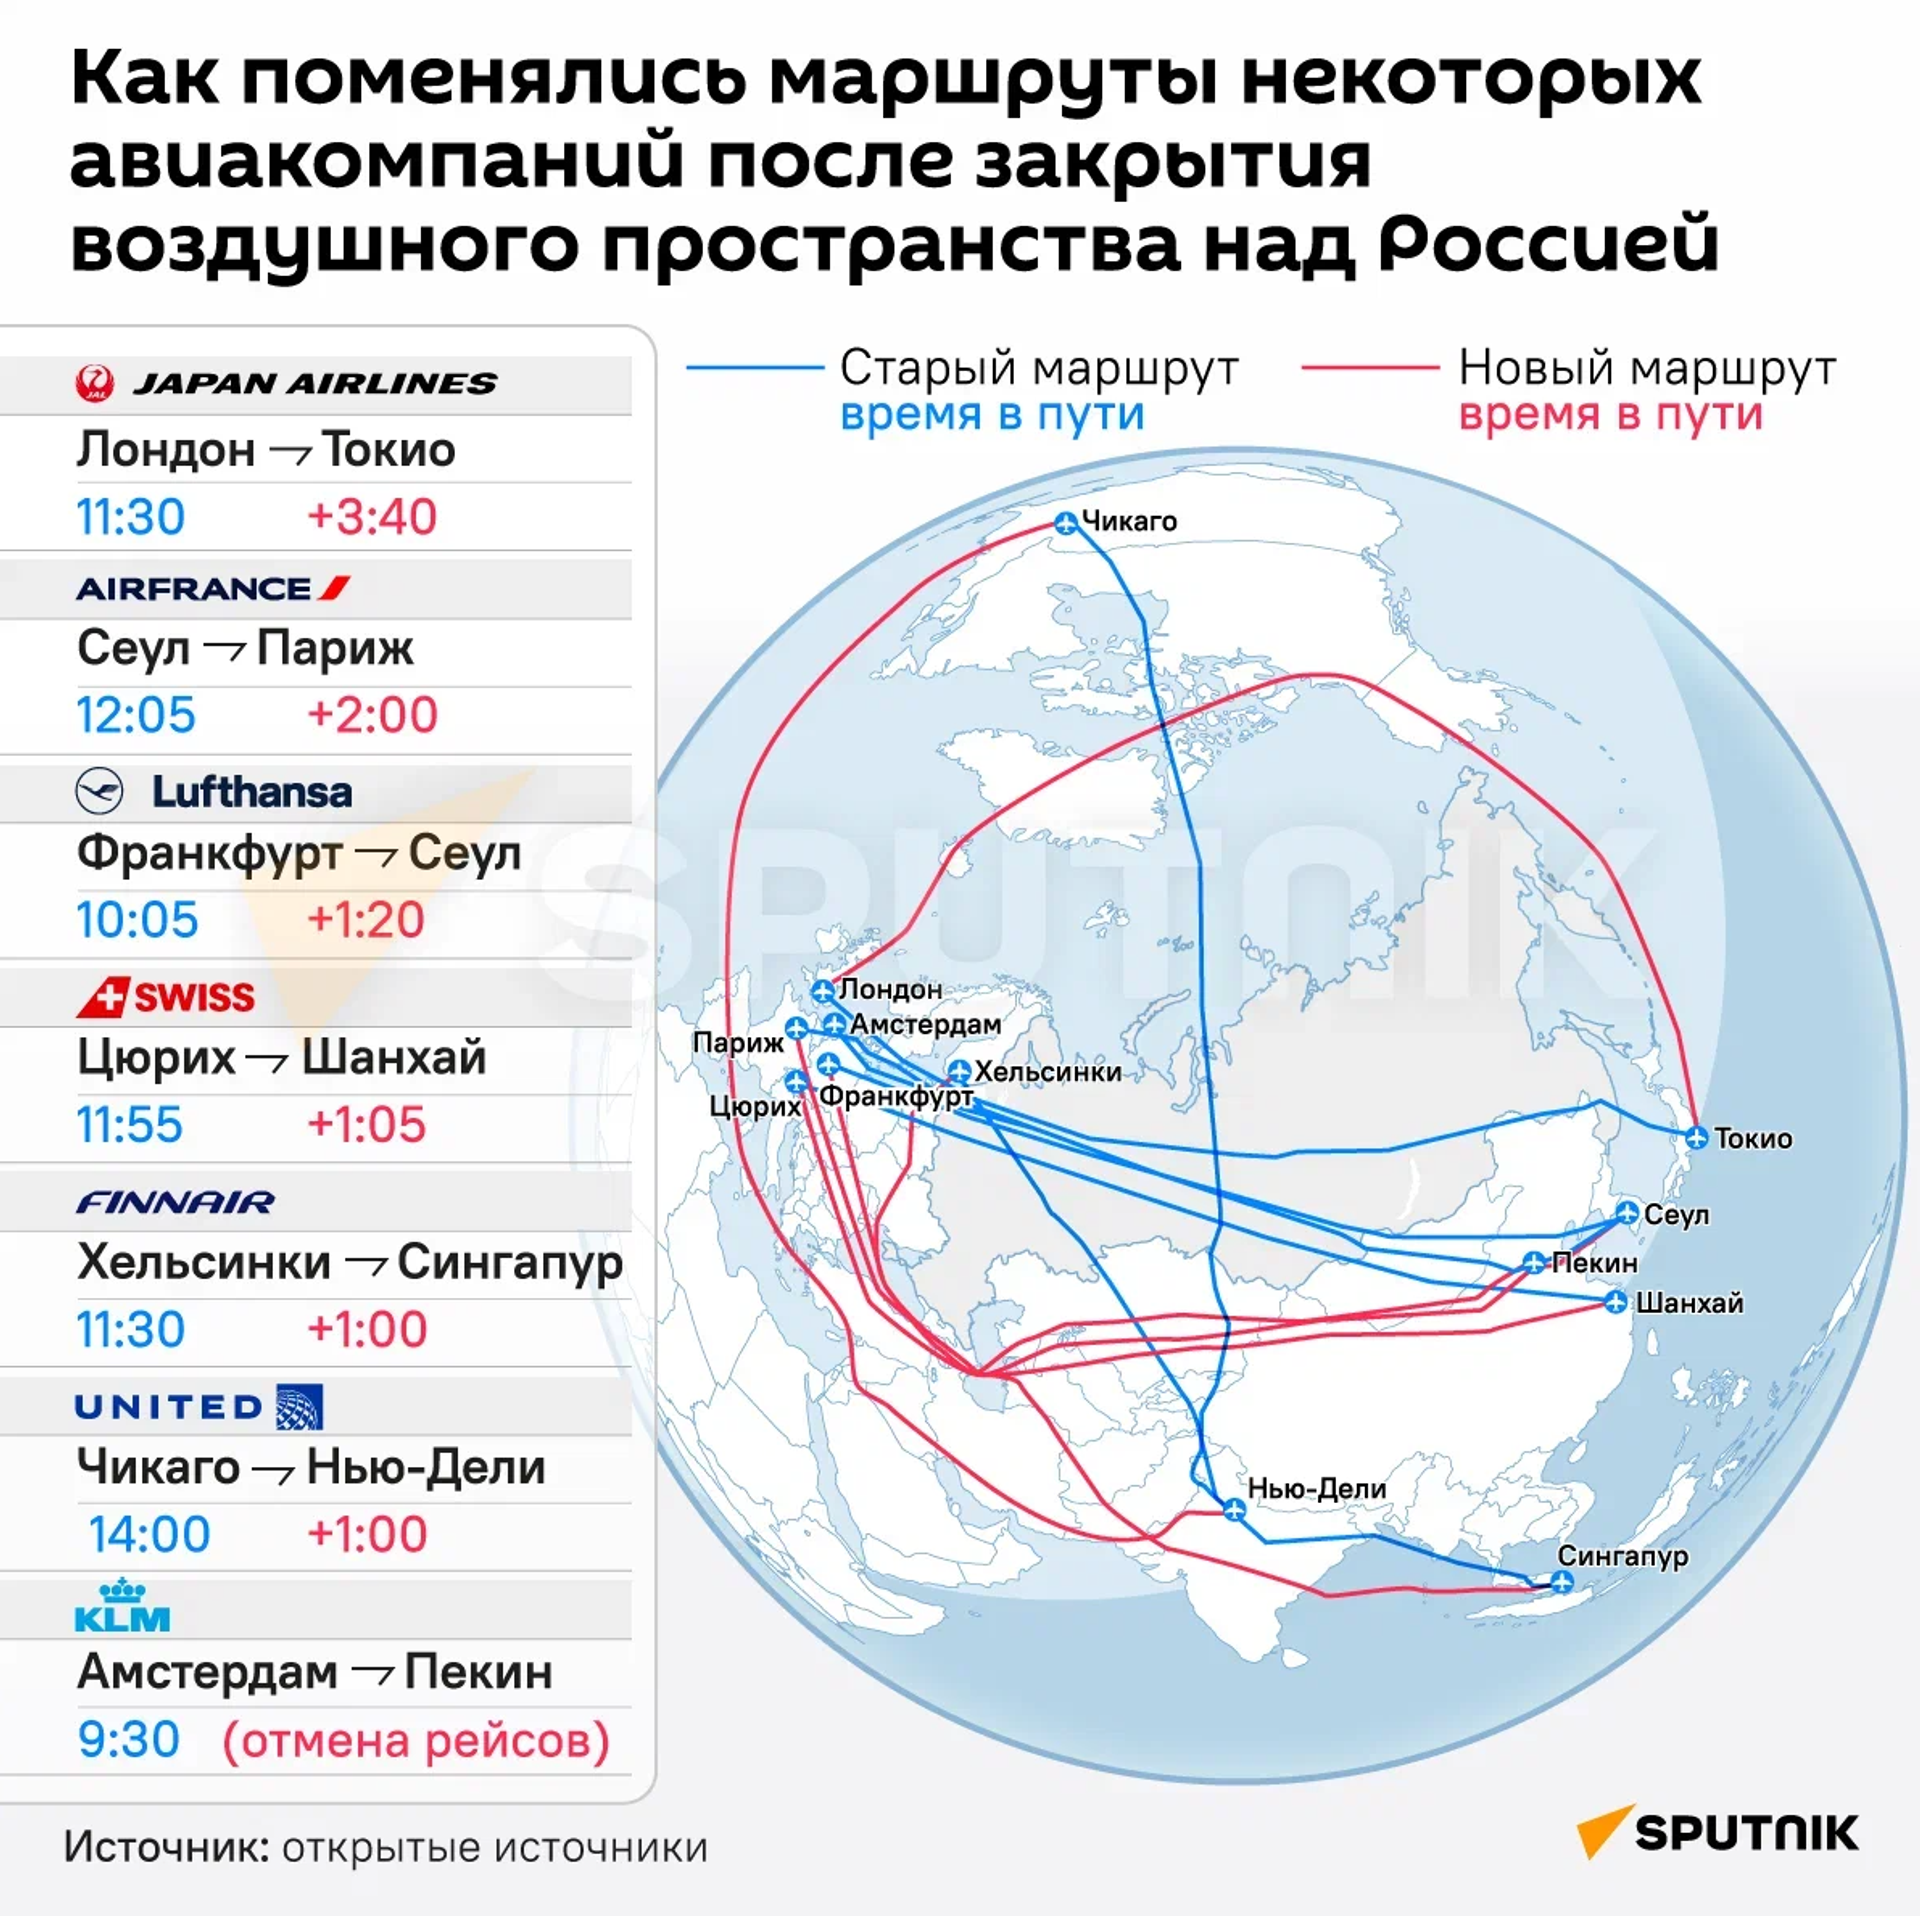 Как поменялись маршруты некоторых авиакомпаний после закрытия воздушного пространства над Россией - Sputnik Узбекистан, 1920, 24.03.2022